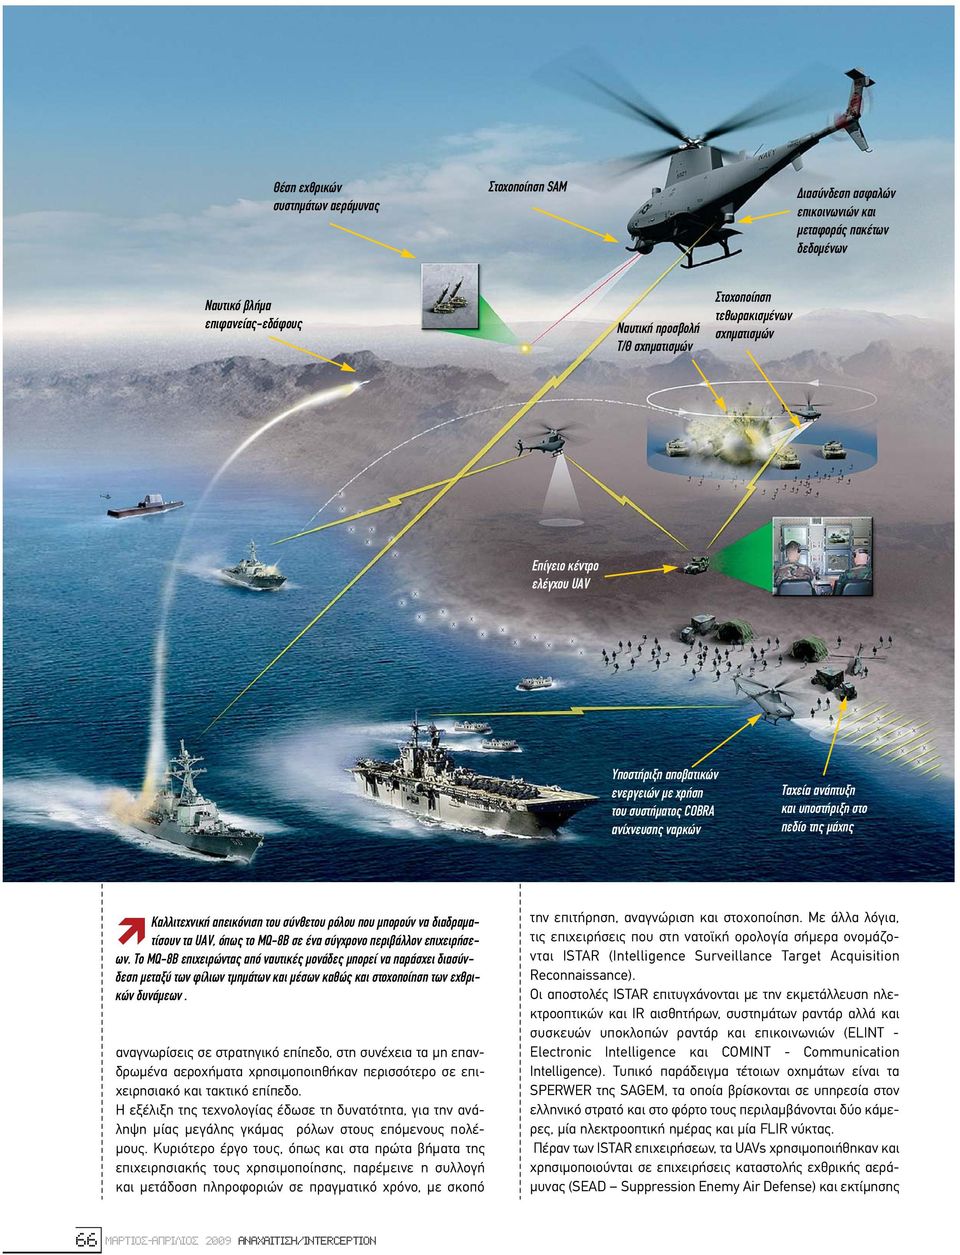 απεικόνιση του σύνθετου ρόλου που µπορούν να διαδραµατίσουν τα UAV, όπως το MQ-8B σε ένα σύγχρονο περιβάλλον επιχειρήσεων.